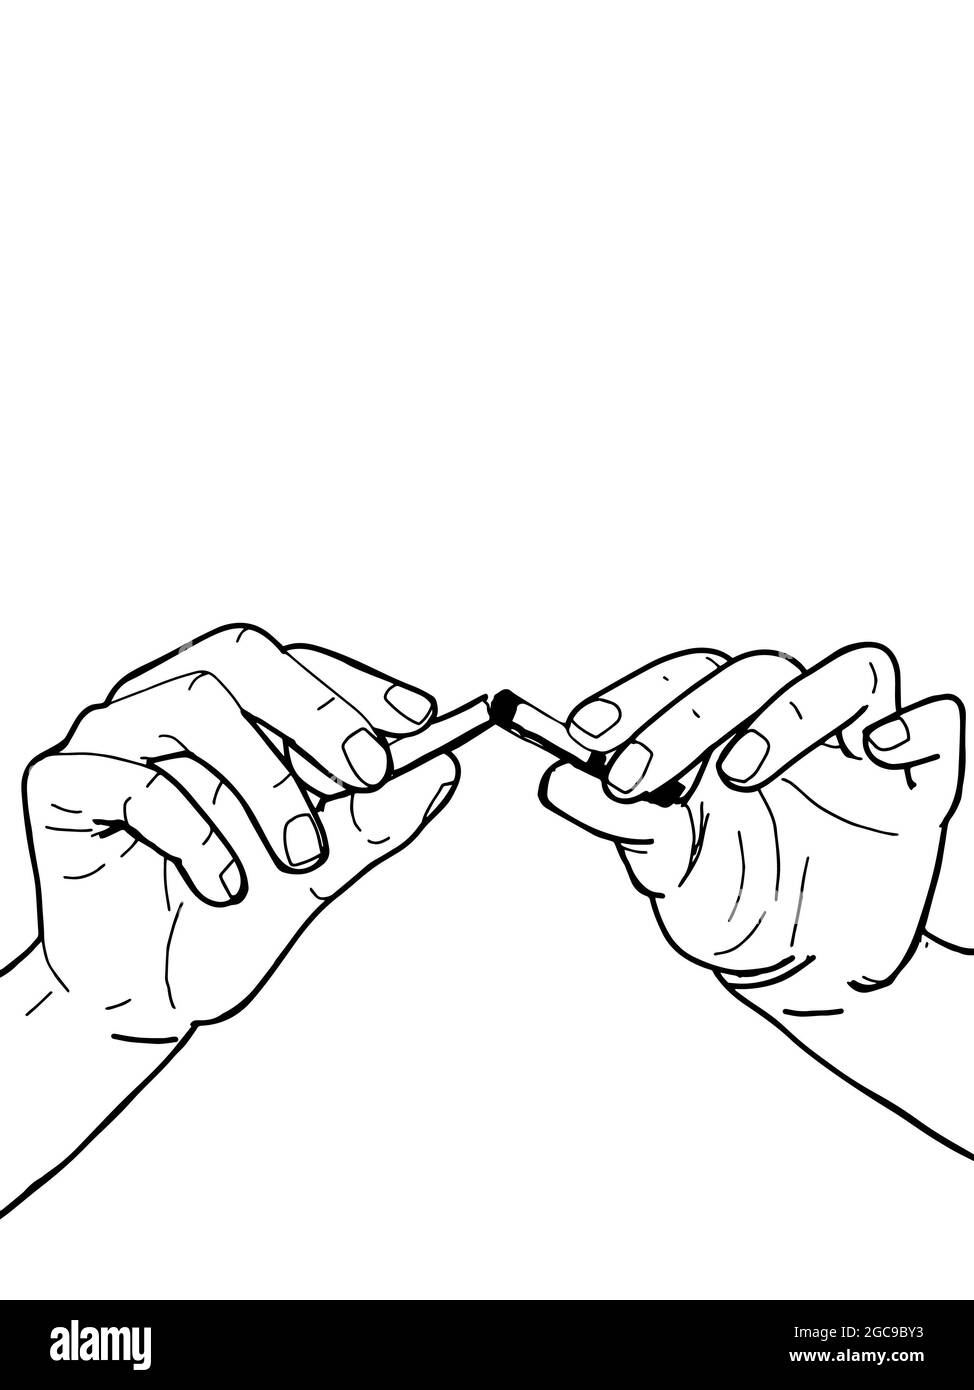 Teilen der Zigarette in zwei Hände, aufhören zu rauchen, Linie Zeichnung Stockfoto